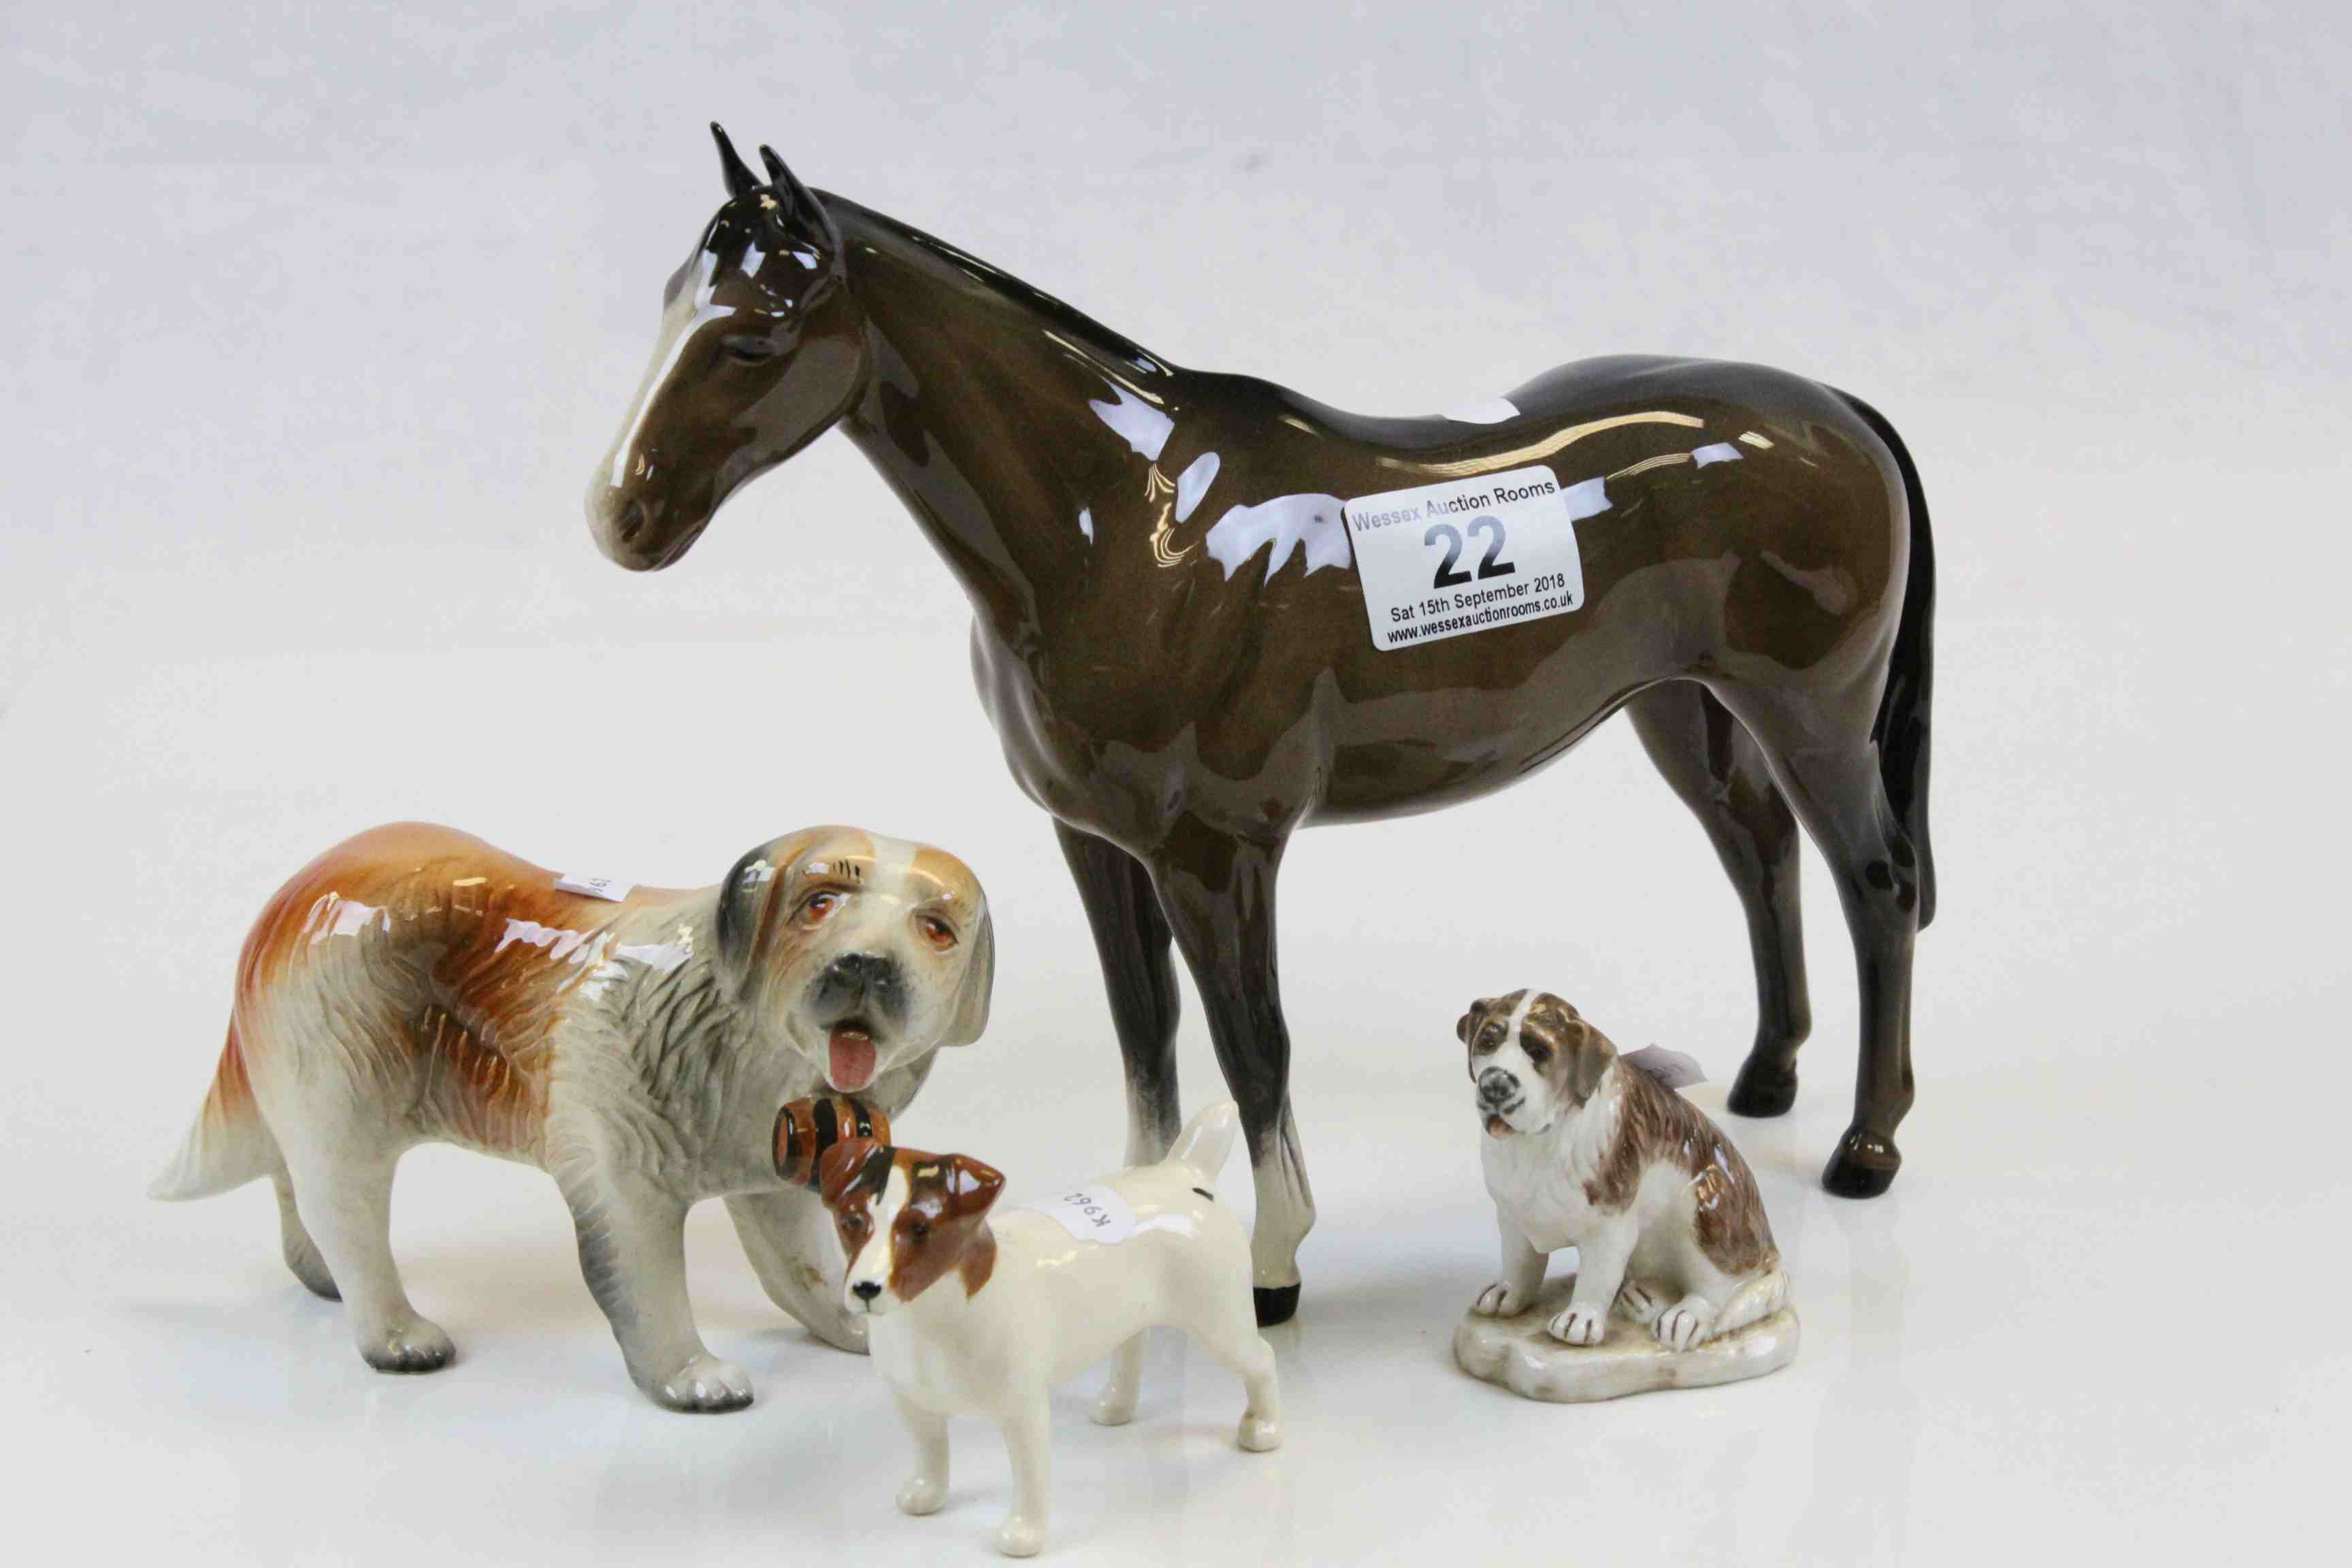 Beswick Horse, Jack Russell, Manuri St Bernard & a Melba Ware St Bernard